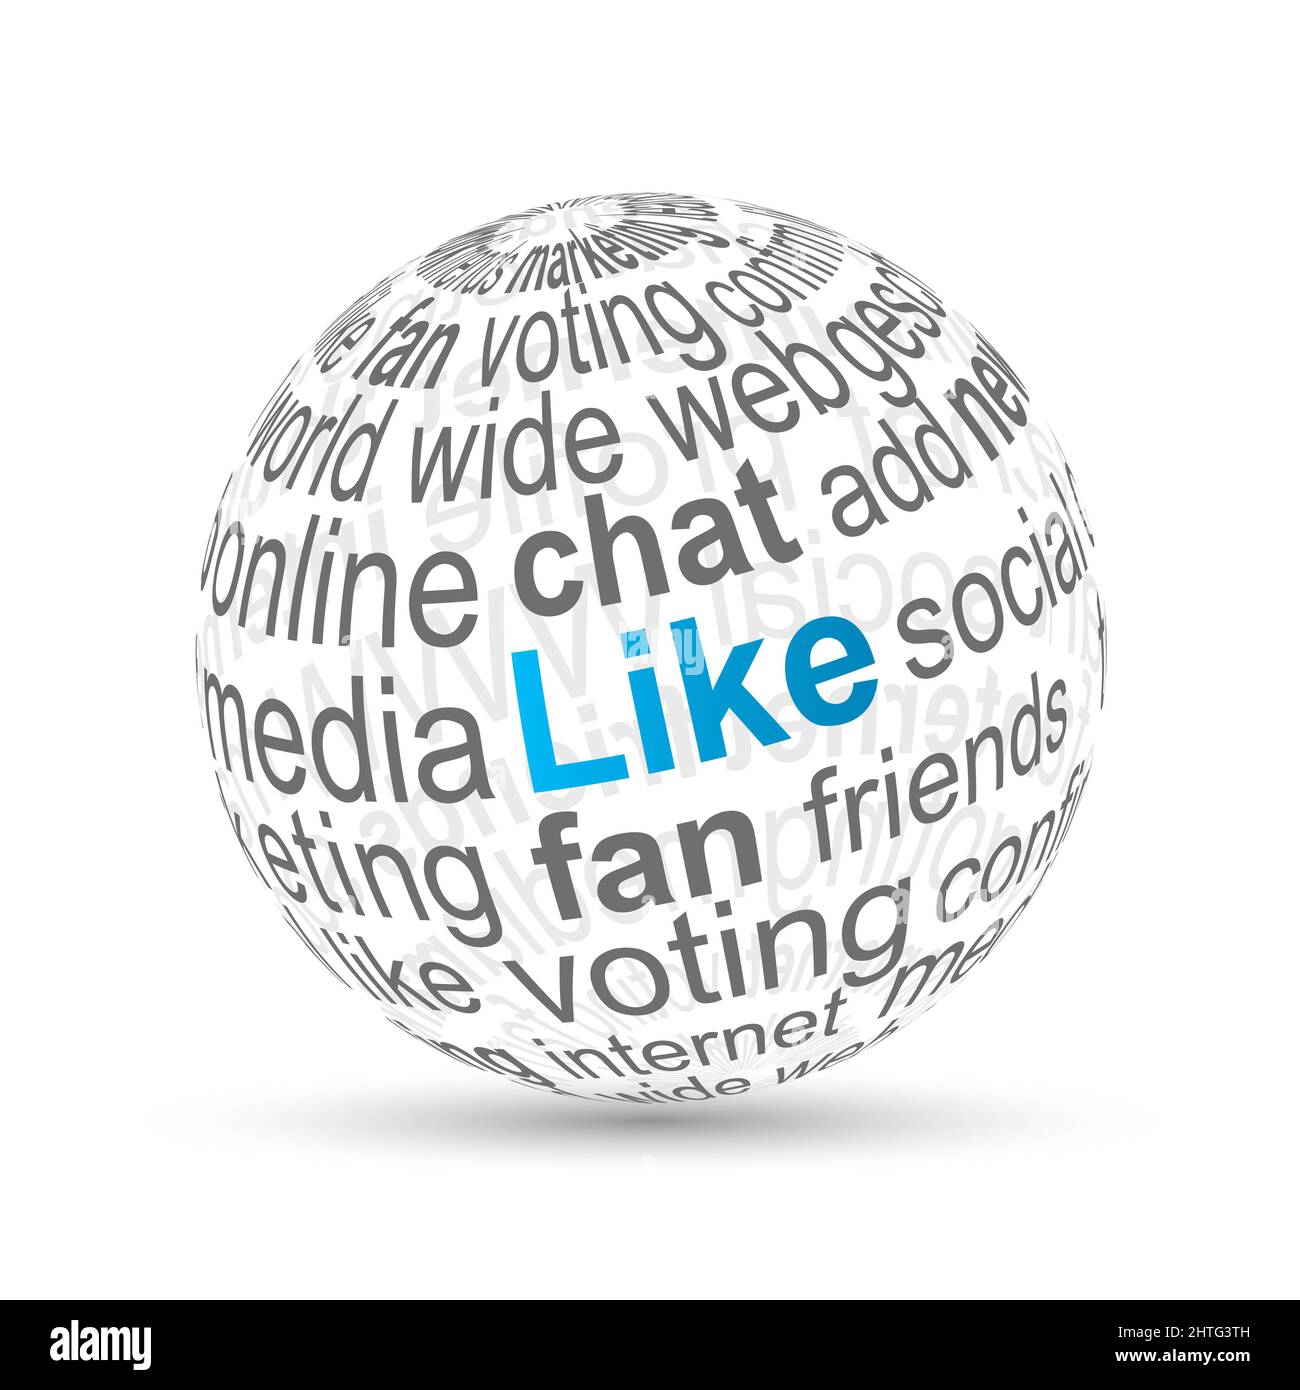 Illustrazione del globo con parole come 'fan, chat, voto, pagina web, ecc.'  scritte su di esso Foto stock - Alamy